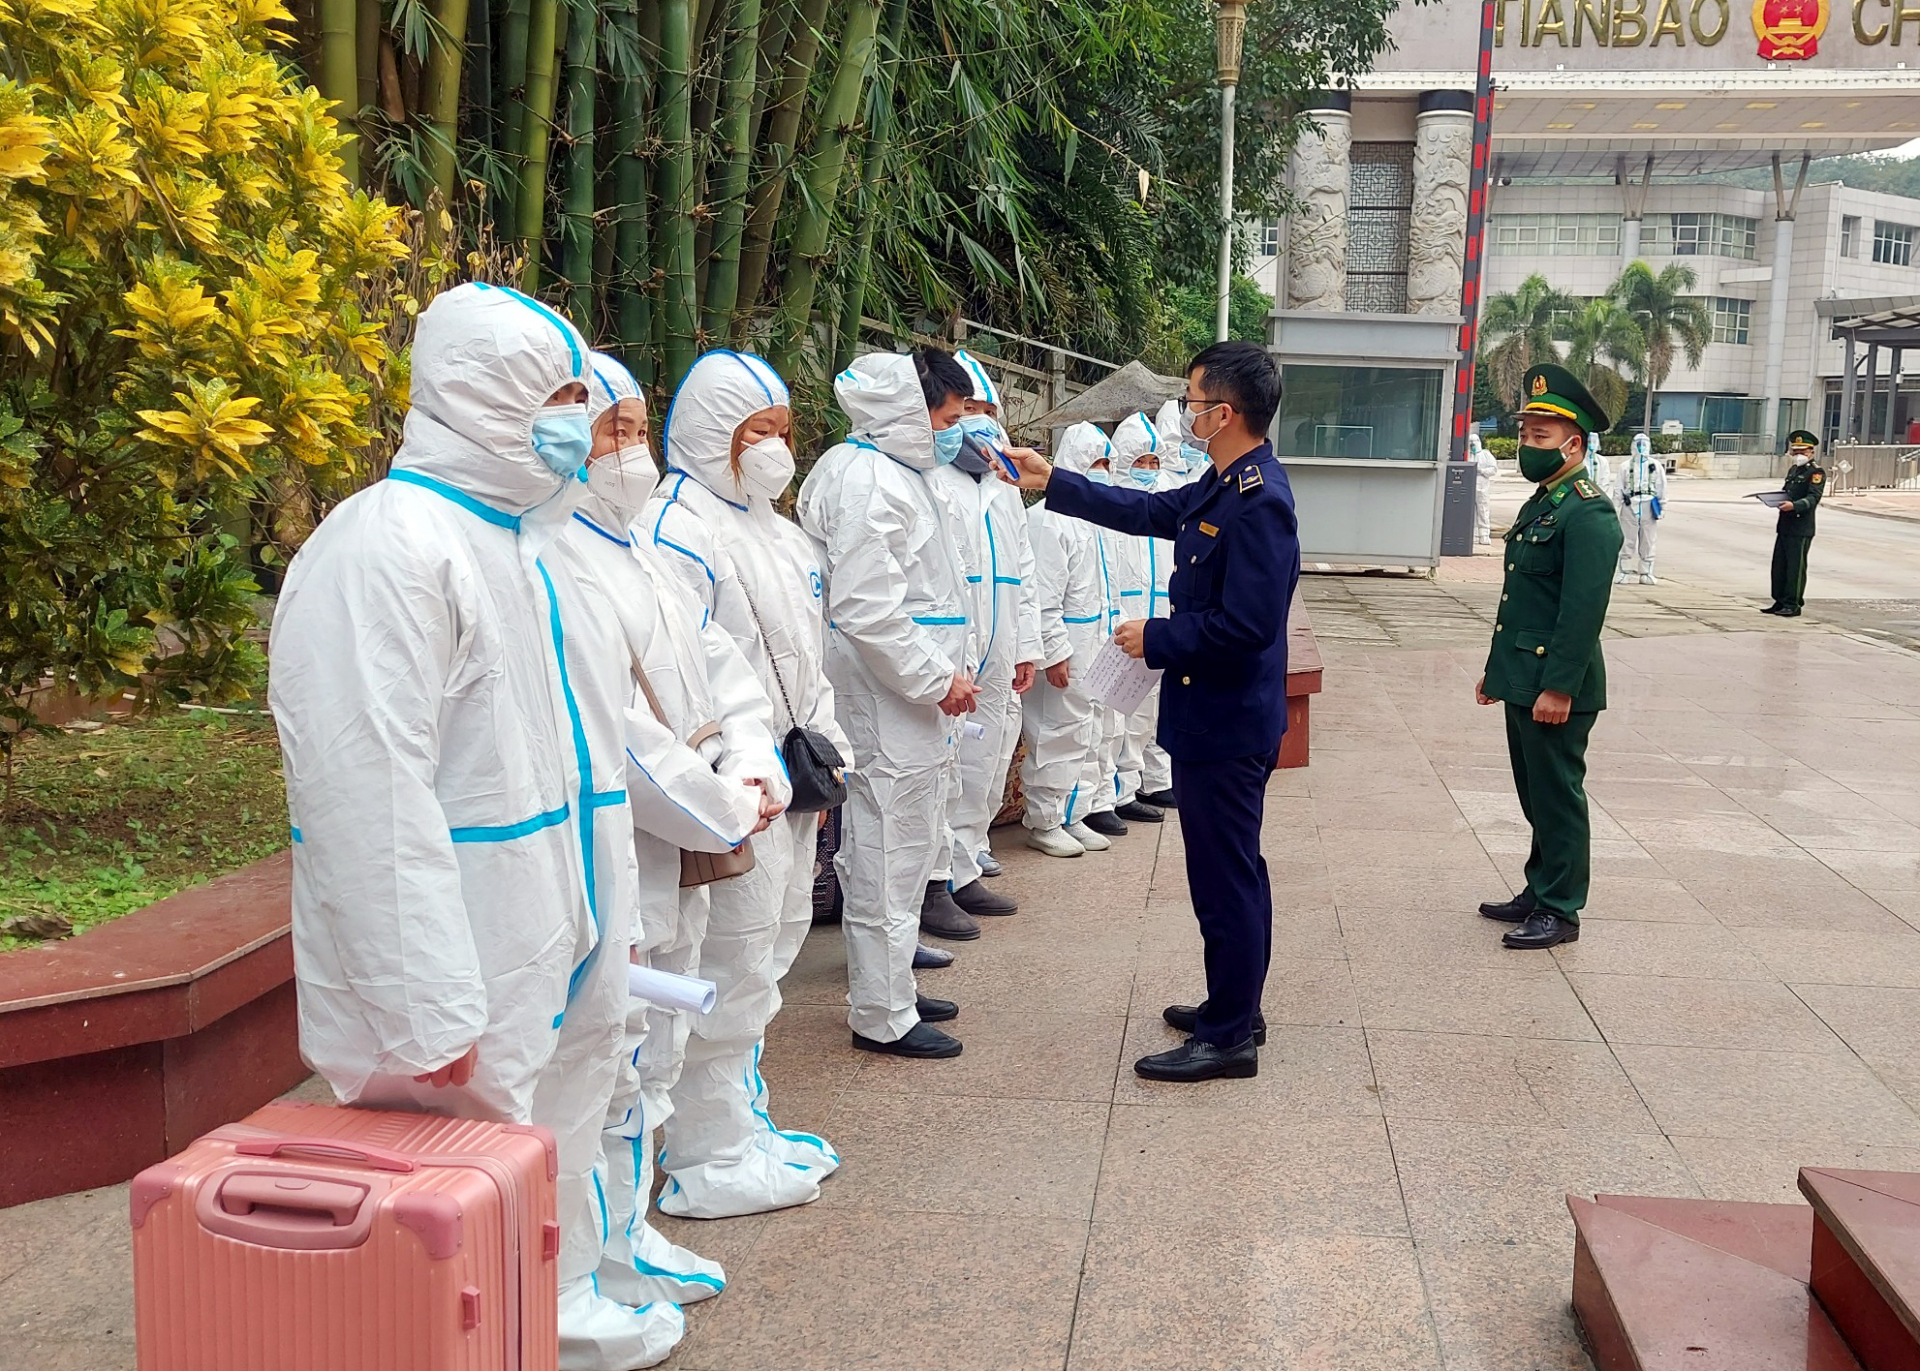 Lực lượng chức năng làm thủ tục tiếp nhận 10 công dân Việt Nam.

